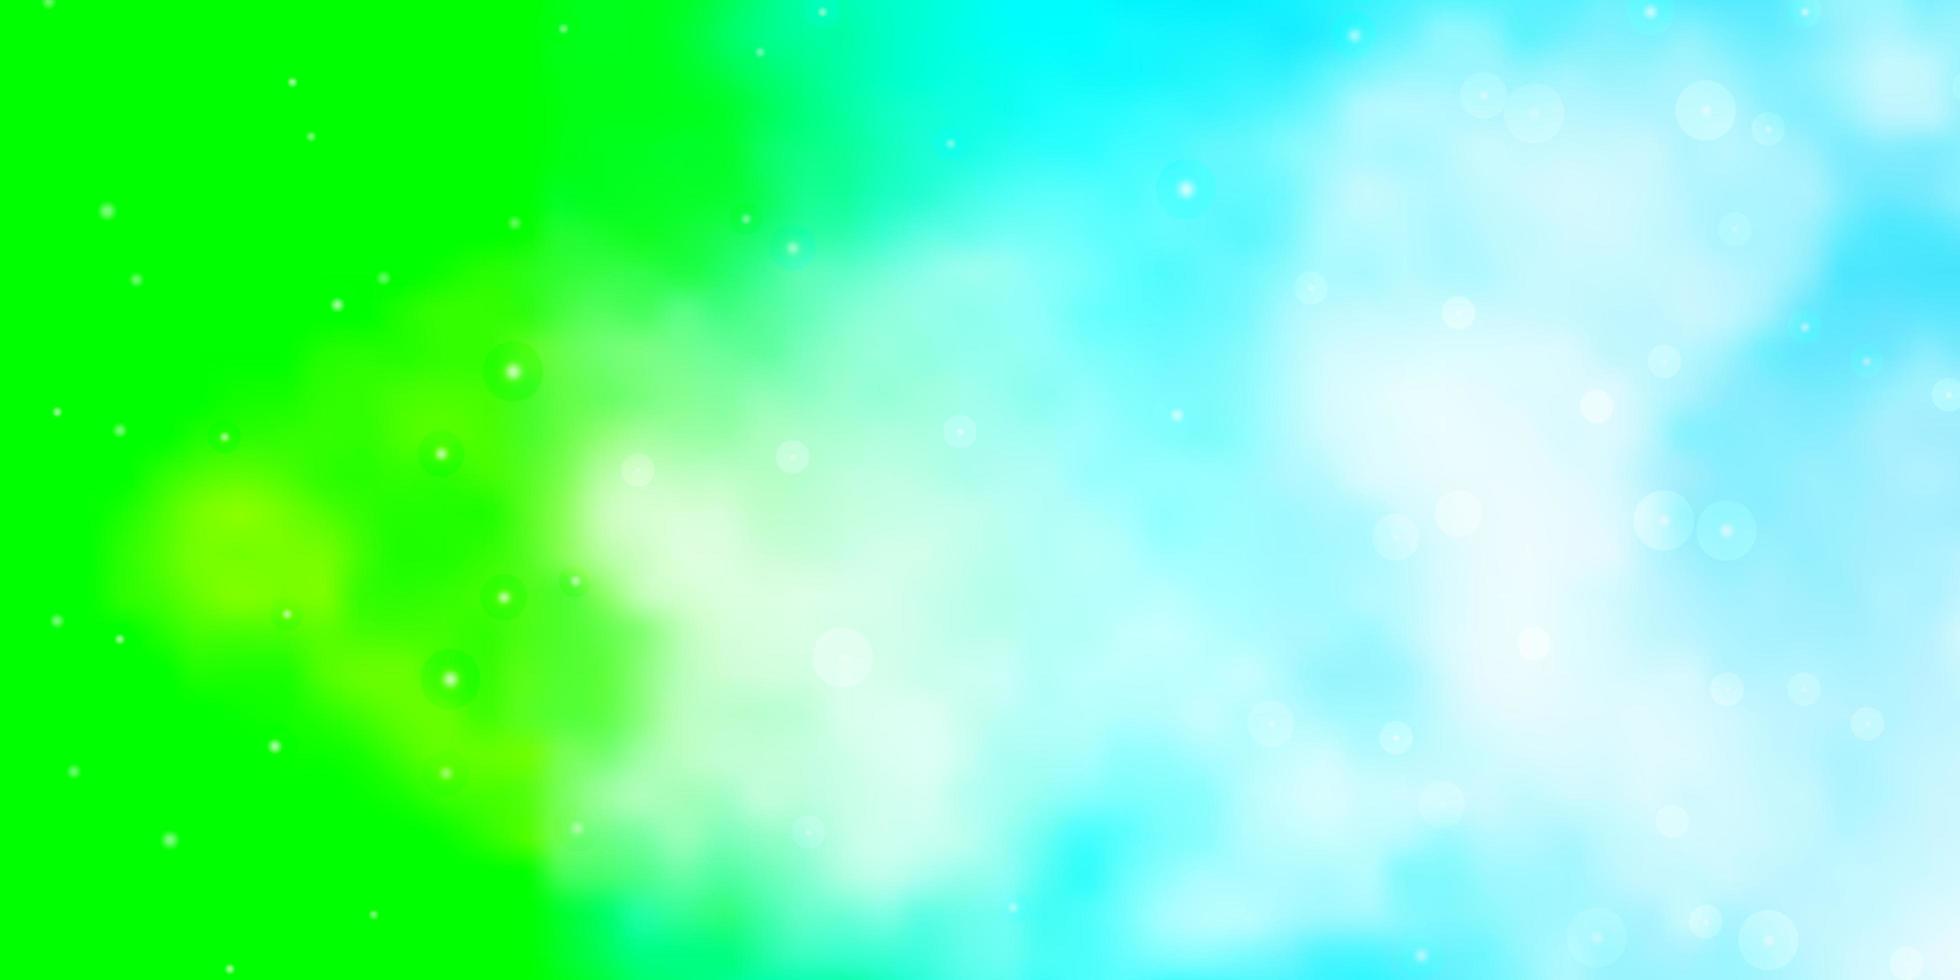 ljusblå, grön vektormall med neonstjärnor vektor